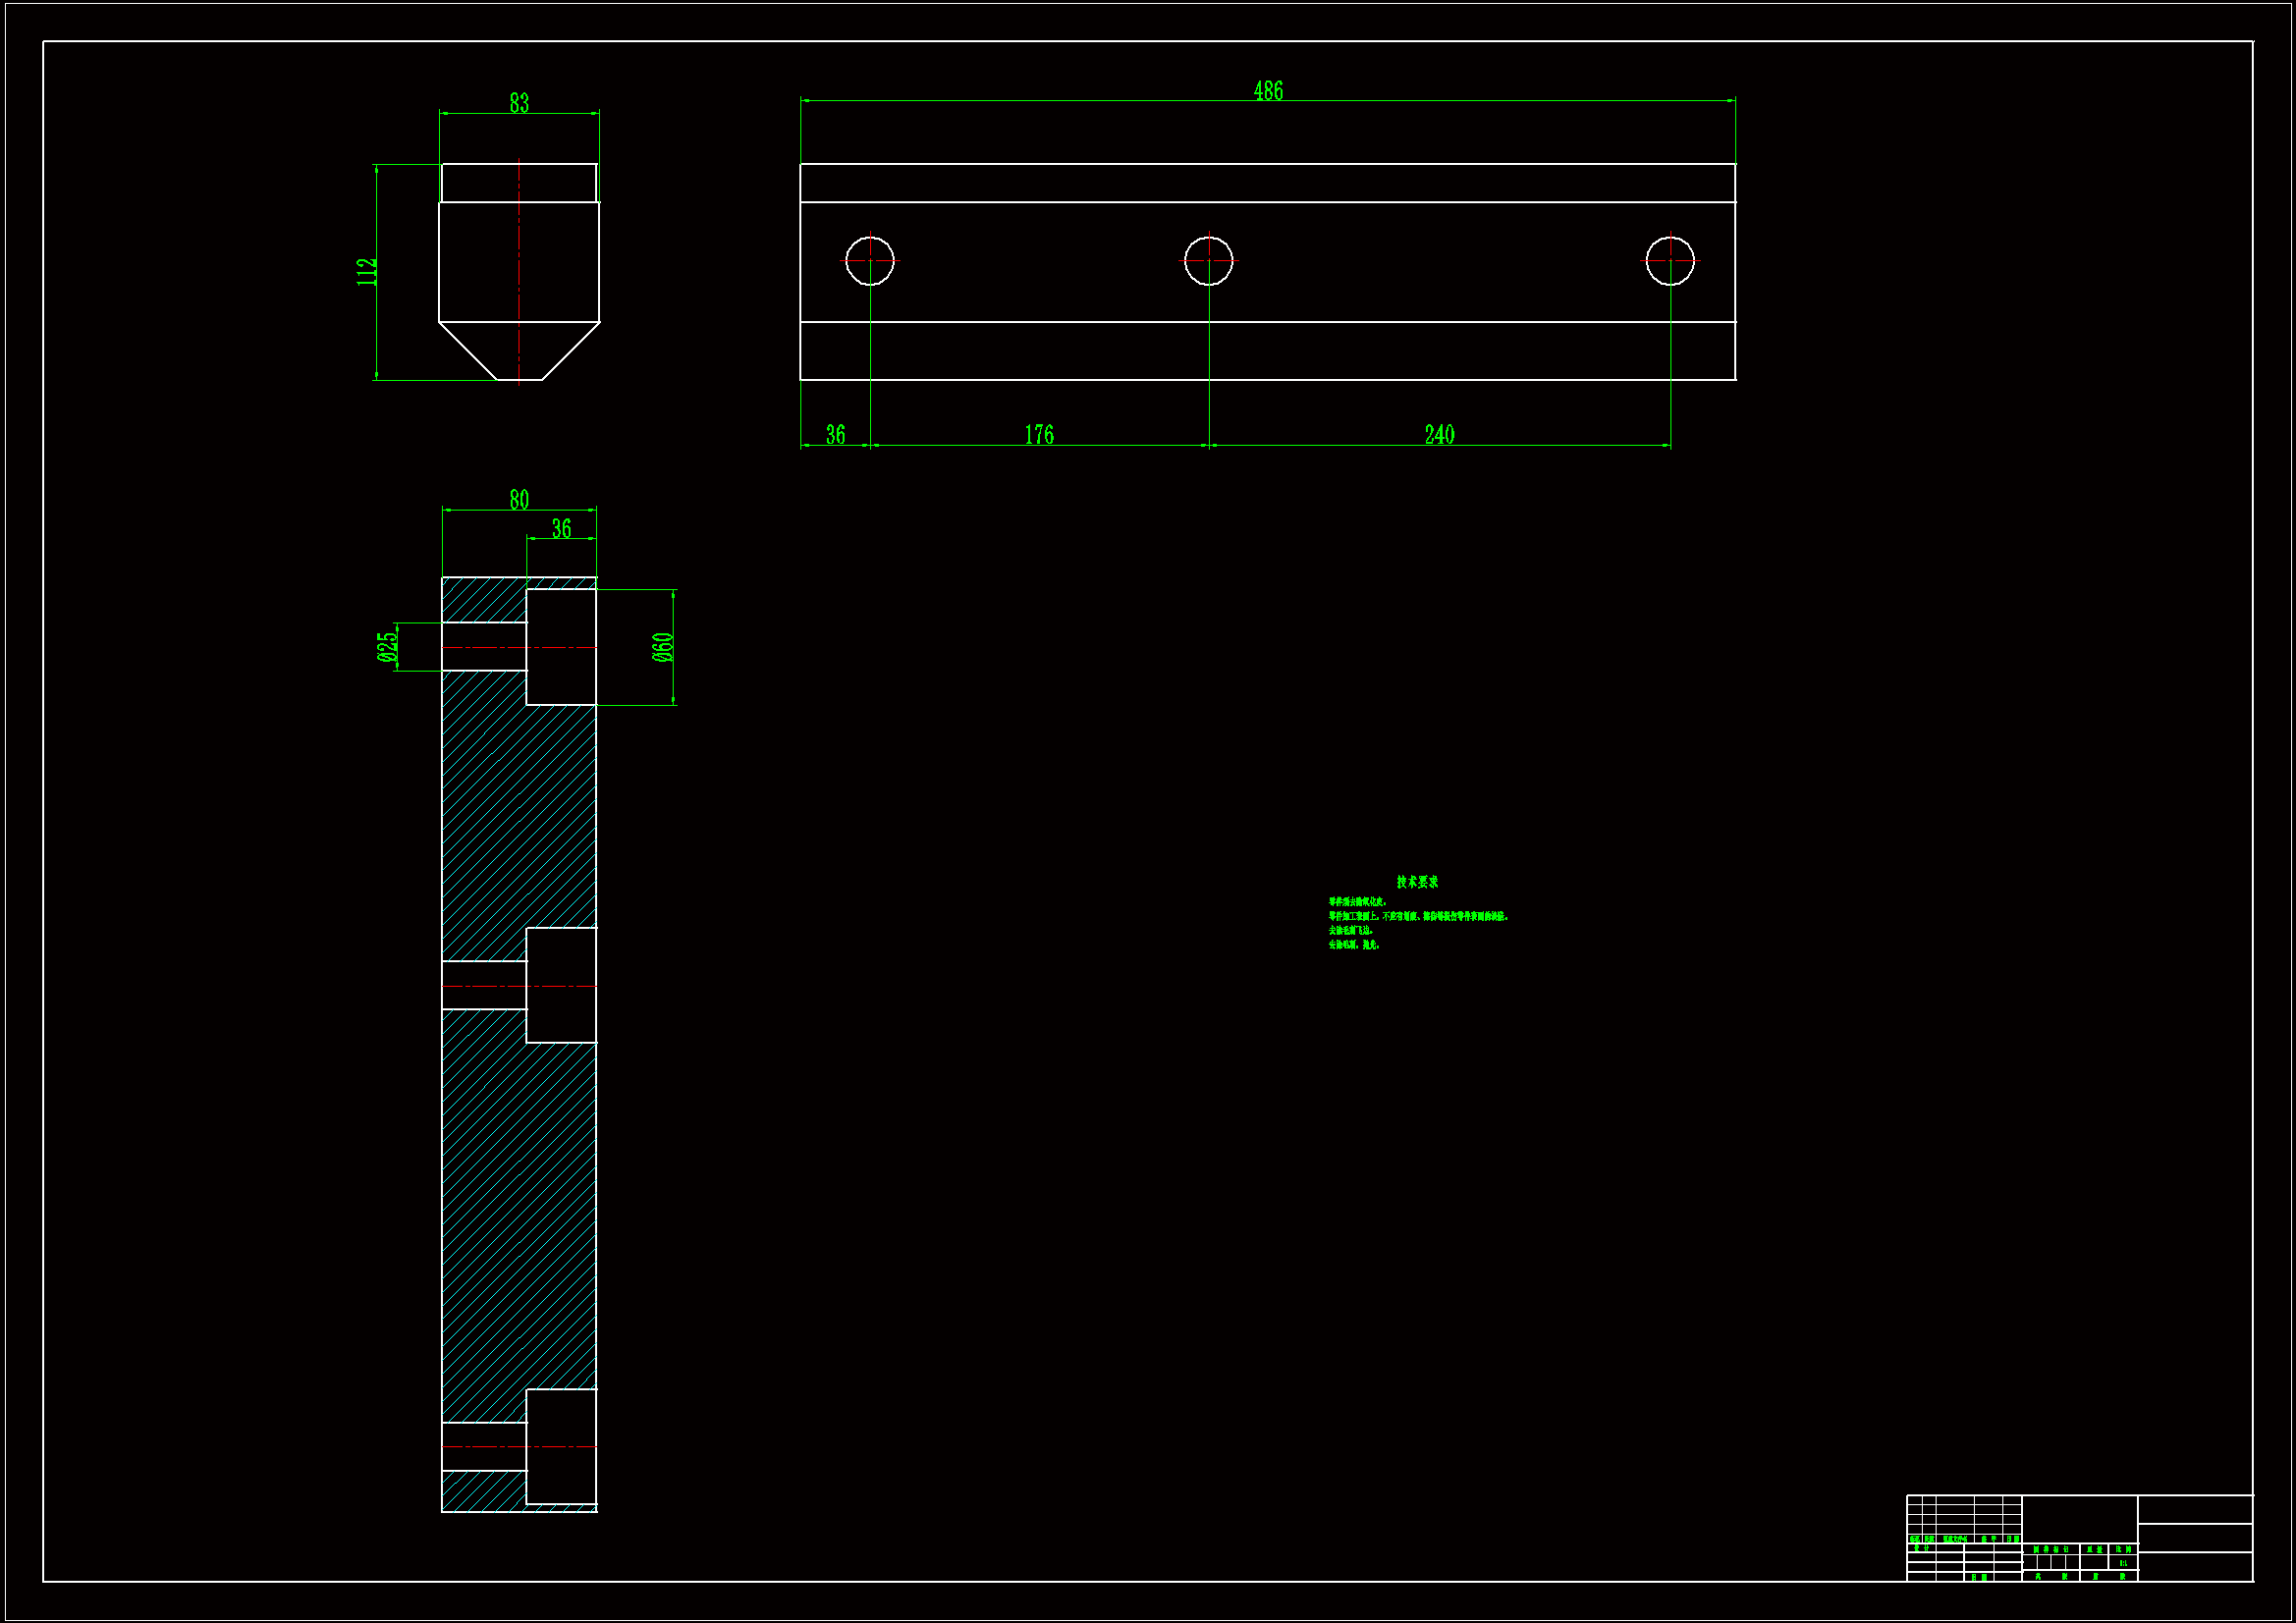 K644-挡板工艺规程及钻3-Φ25孔的钻床夹具设计【长度486】.zip